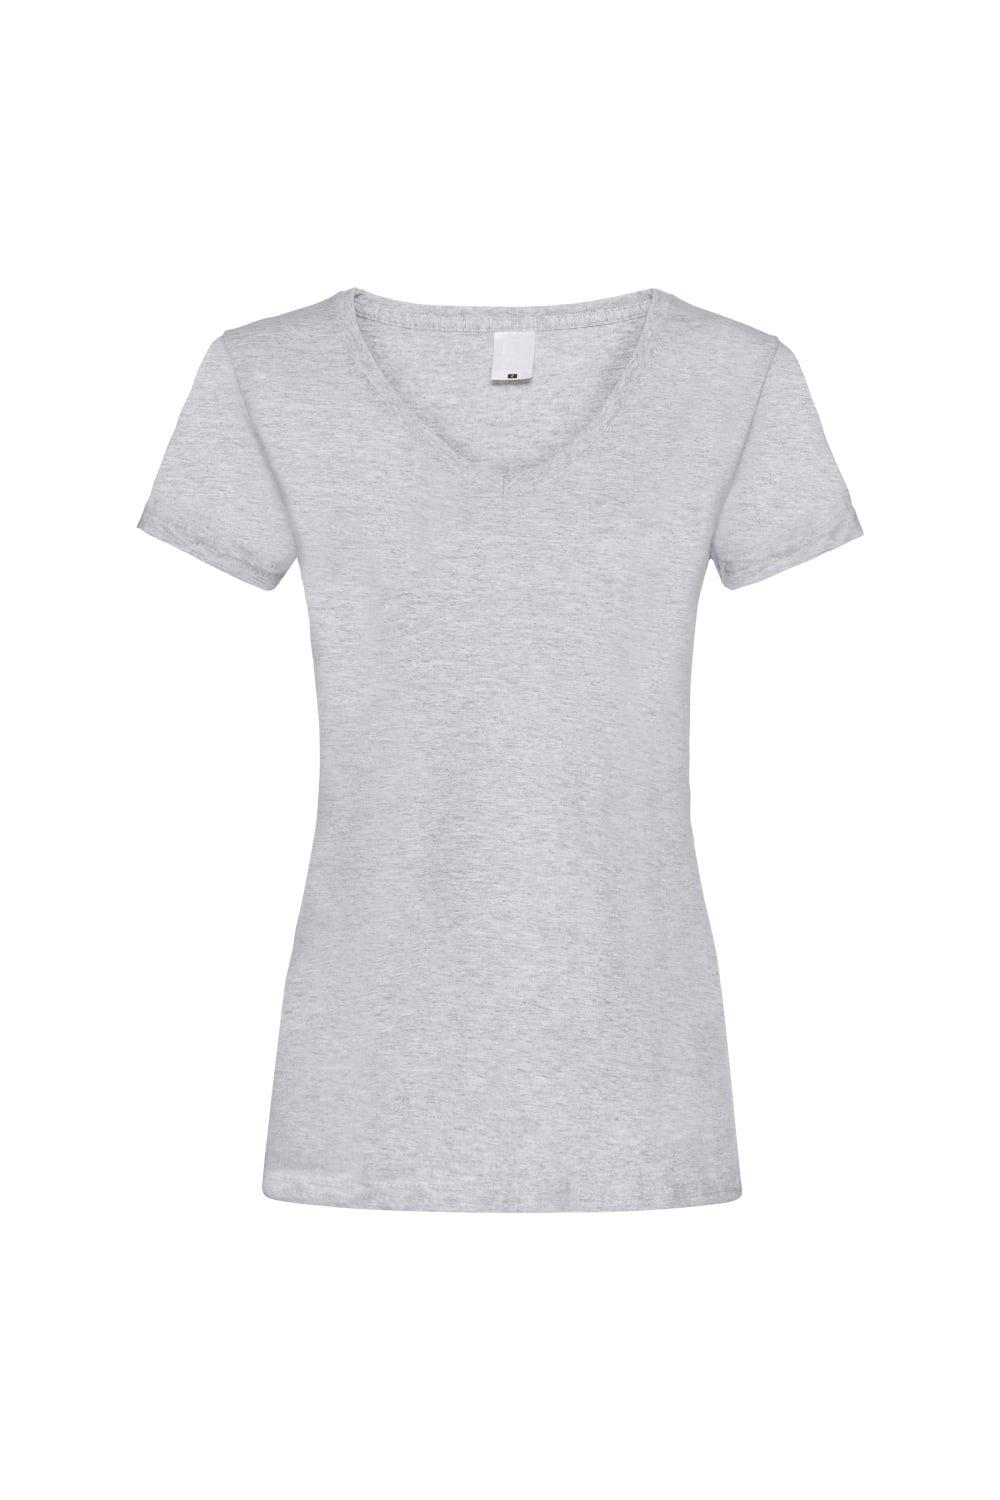 Повседневная футболка Value с V-образным вырезом и короткими рукавами Universal Textiles, серый мужская футболка корги герой s серый меланж